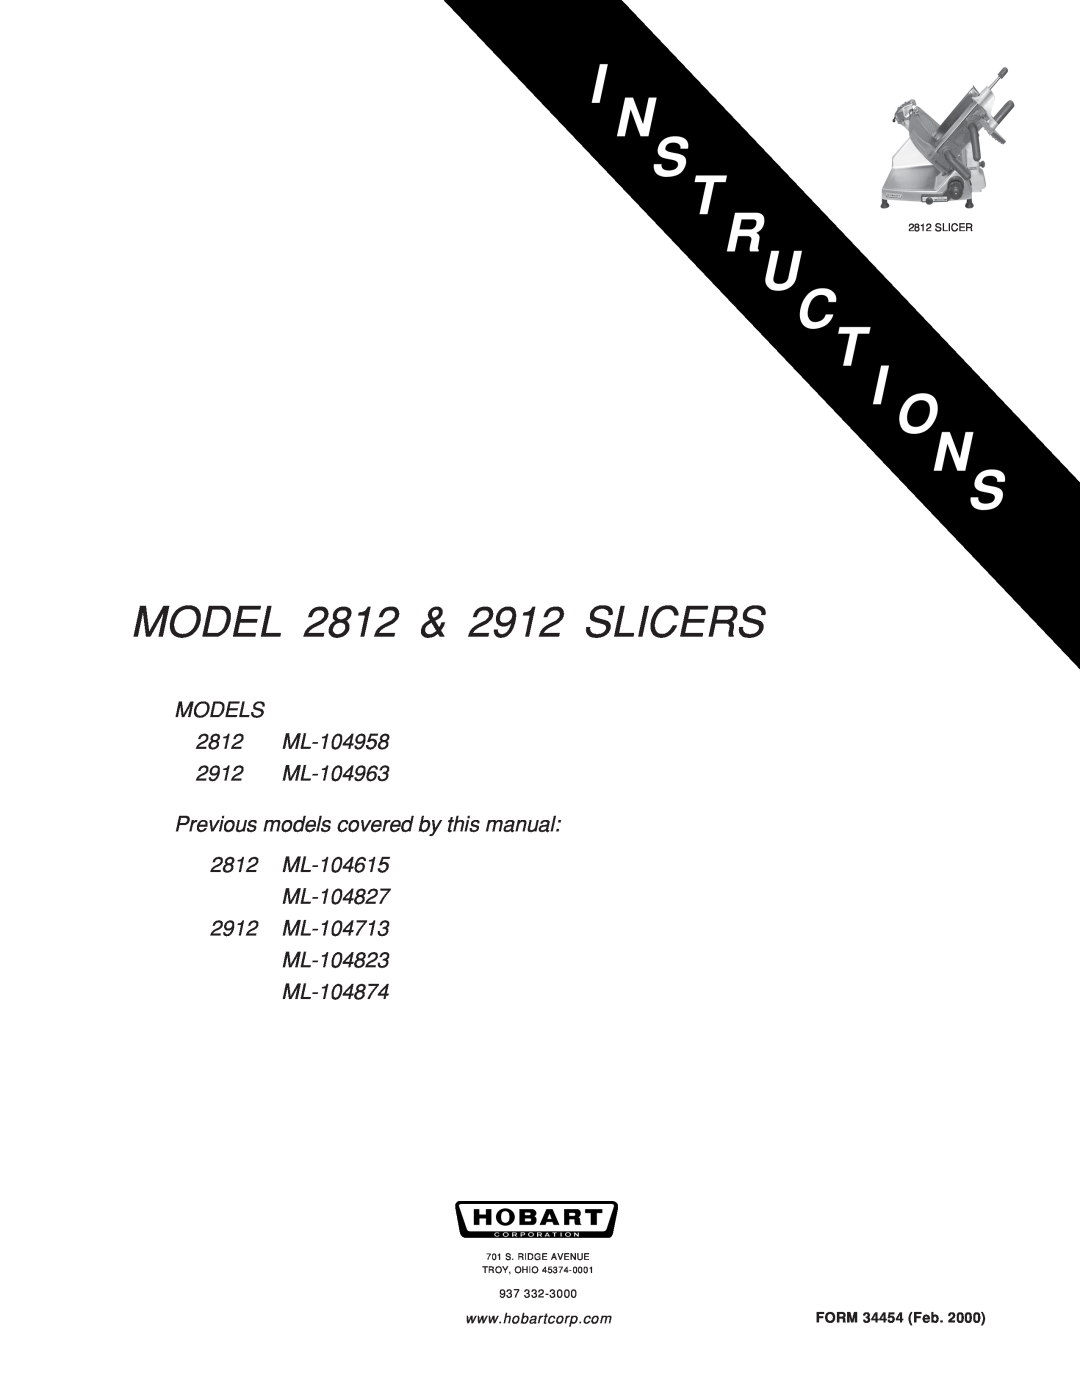 Hobart manual Uct I Ons, MODEL 2812 & 2912 SLICERS, MODELS 2812 ML-104958 2912 ML-104963, FORM 34454 Feb, TR 2812 SLICER 